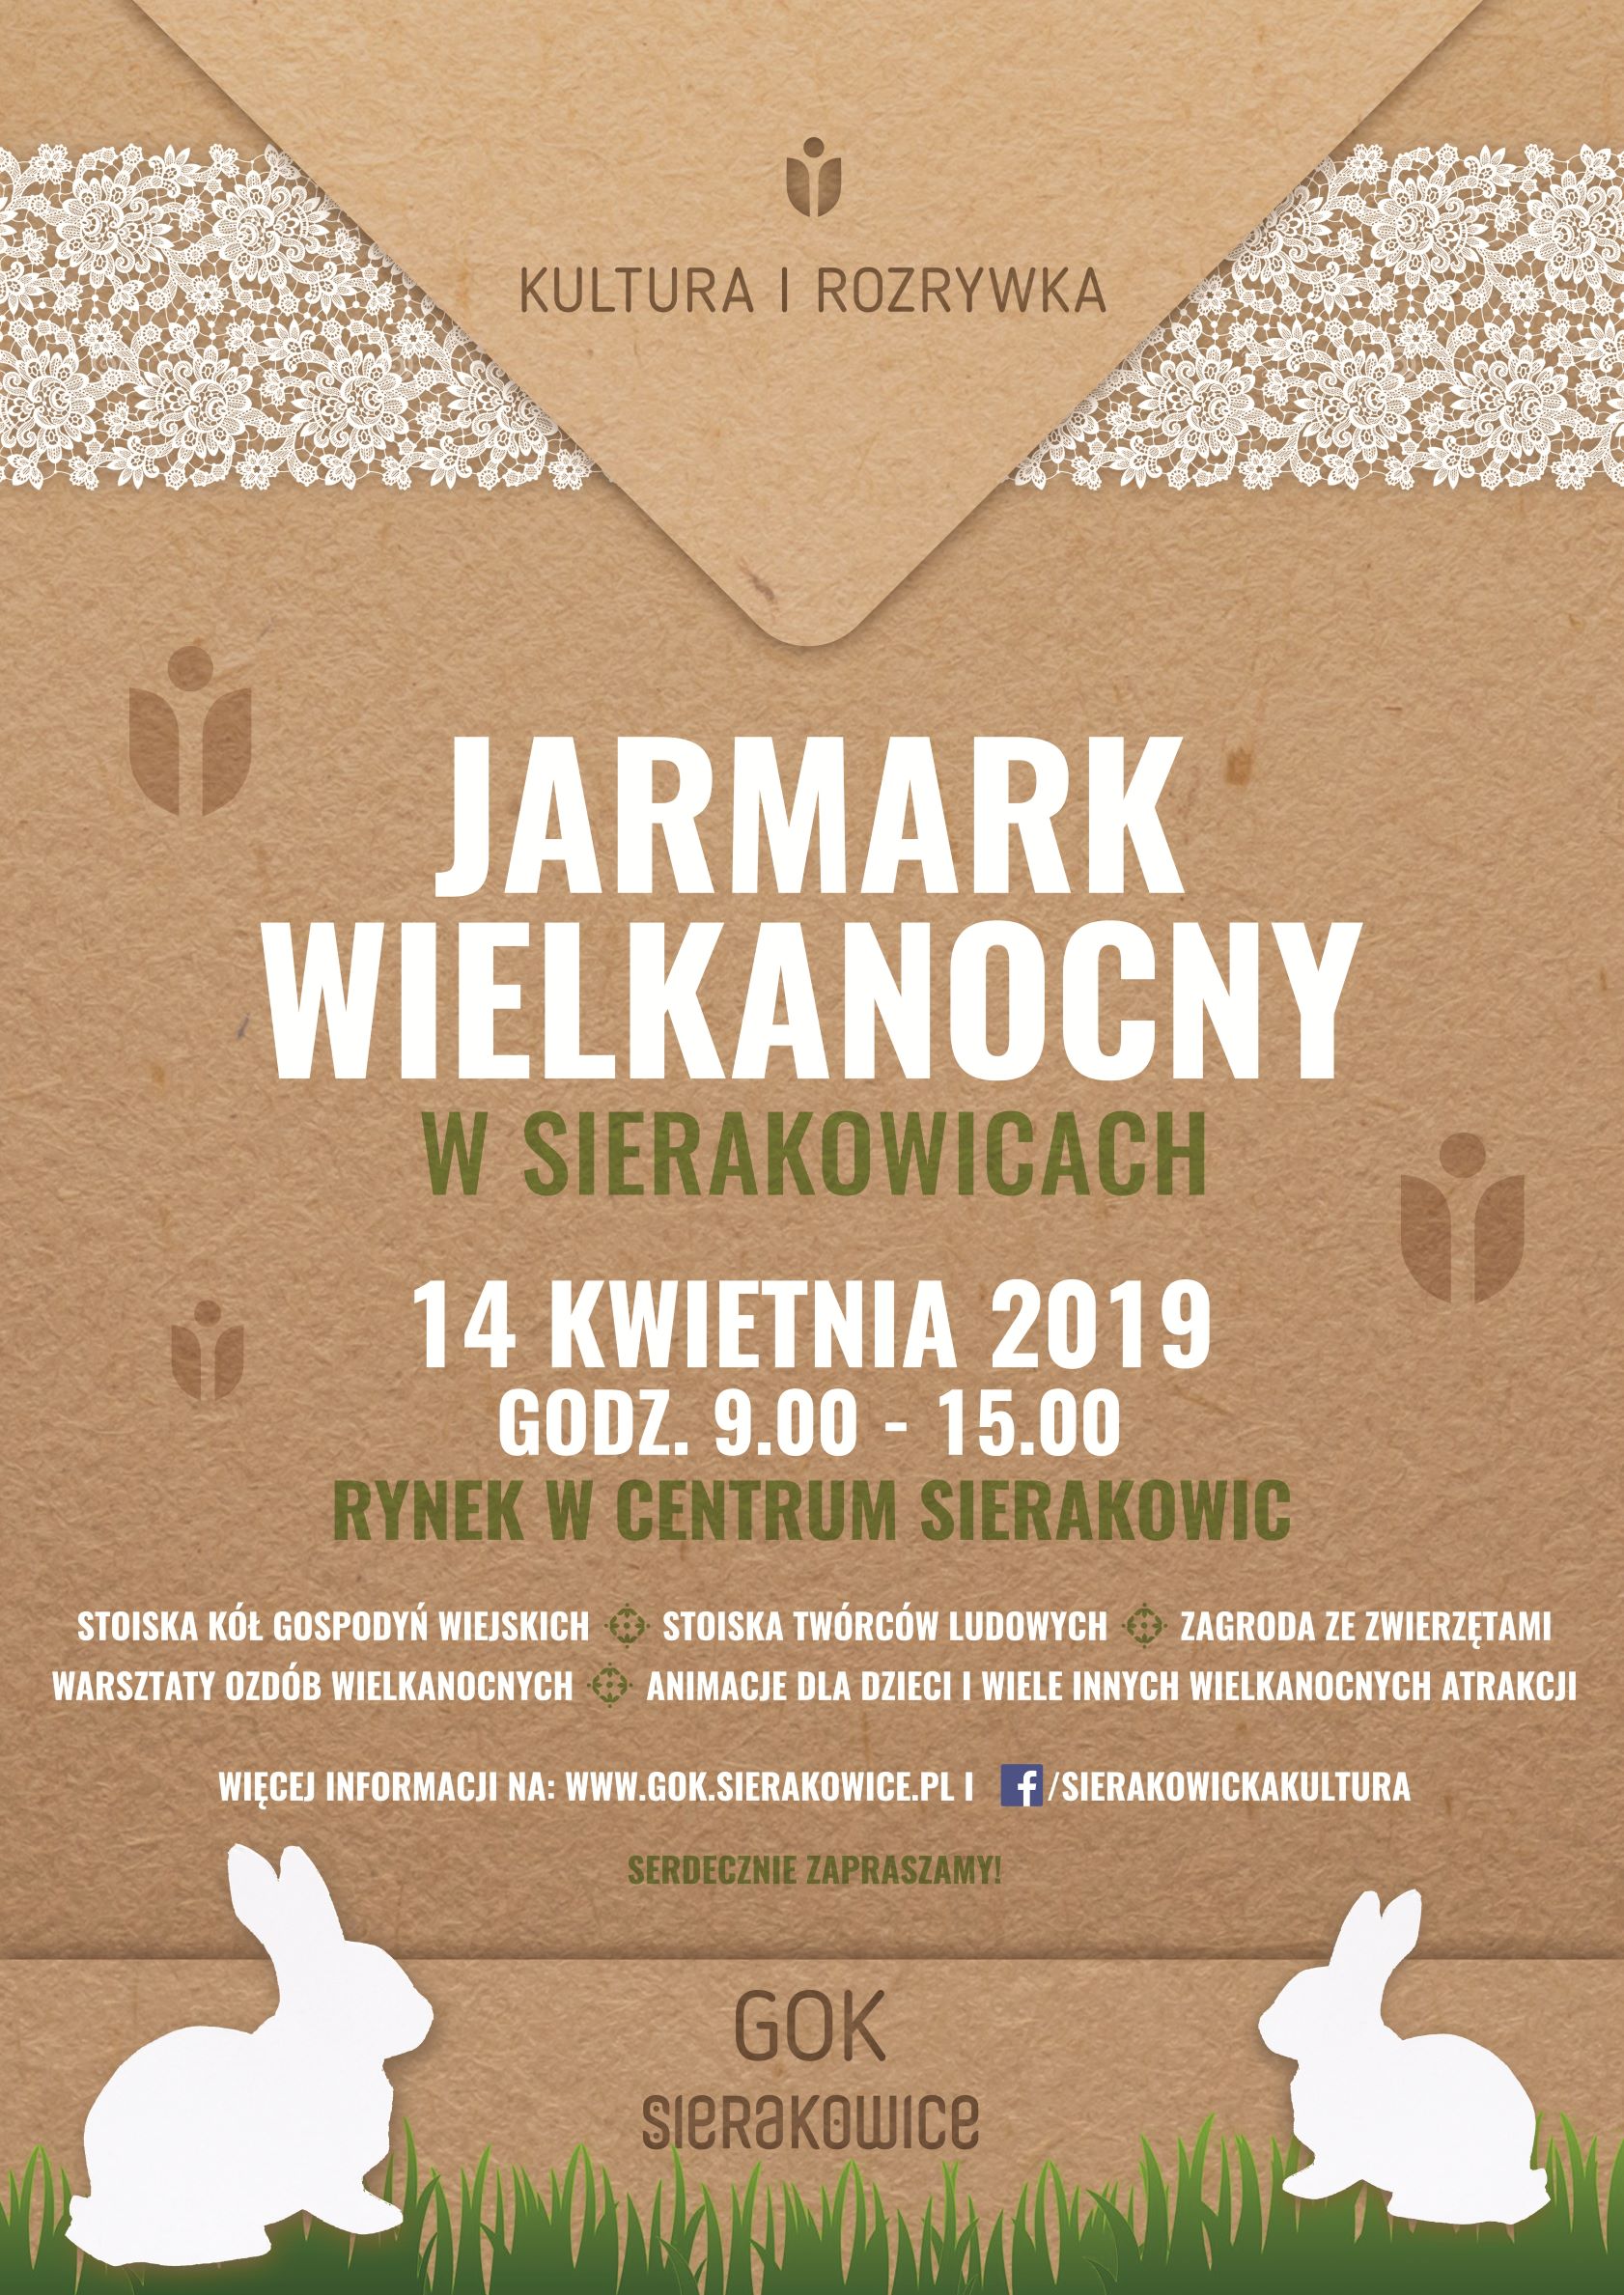 Jarmark Wielkanocny w Sierakowicach